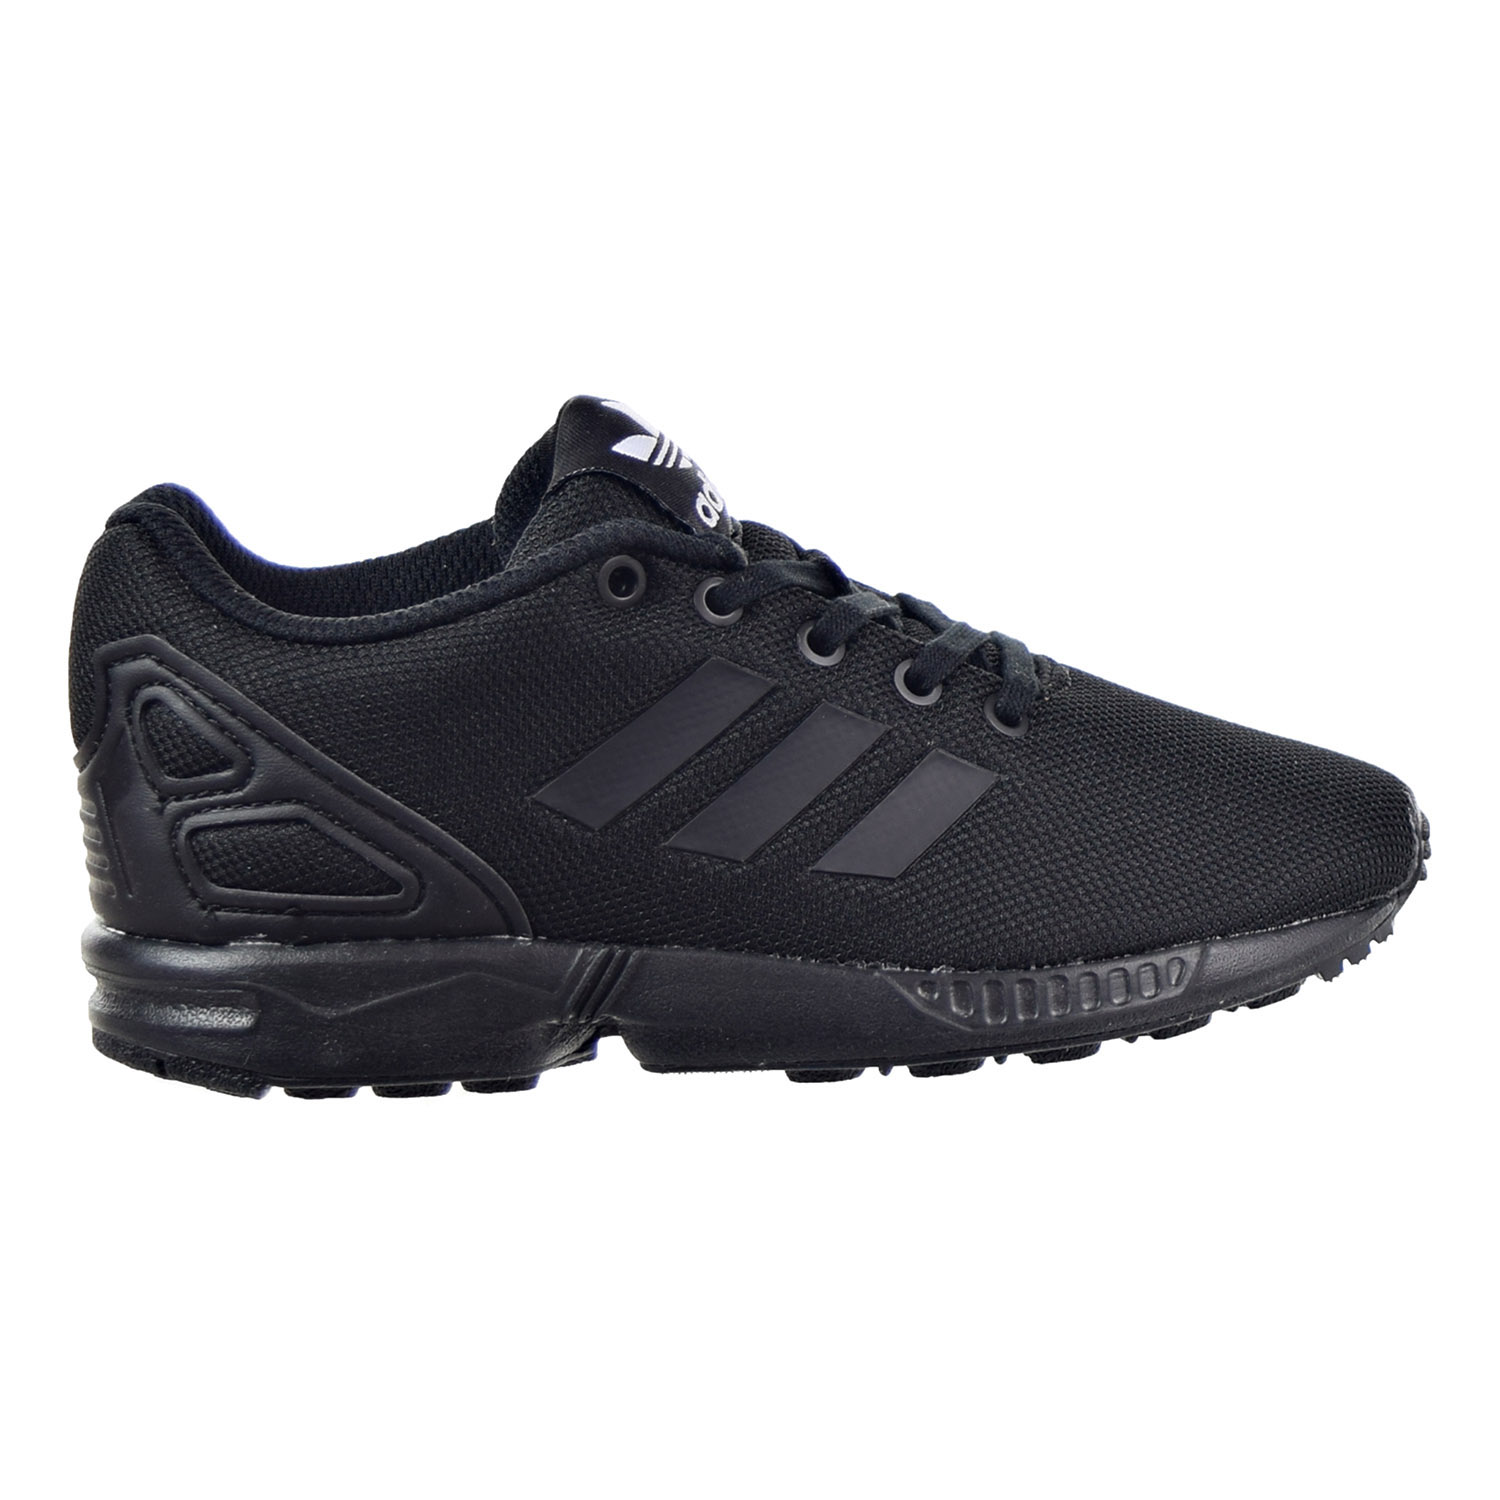 Adidas ZX Flux C Little Kid's Shoes Core Black-Core Black s76297 